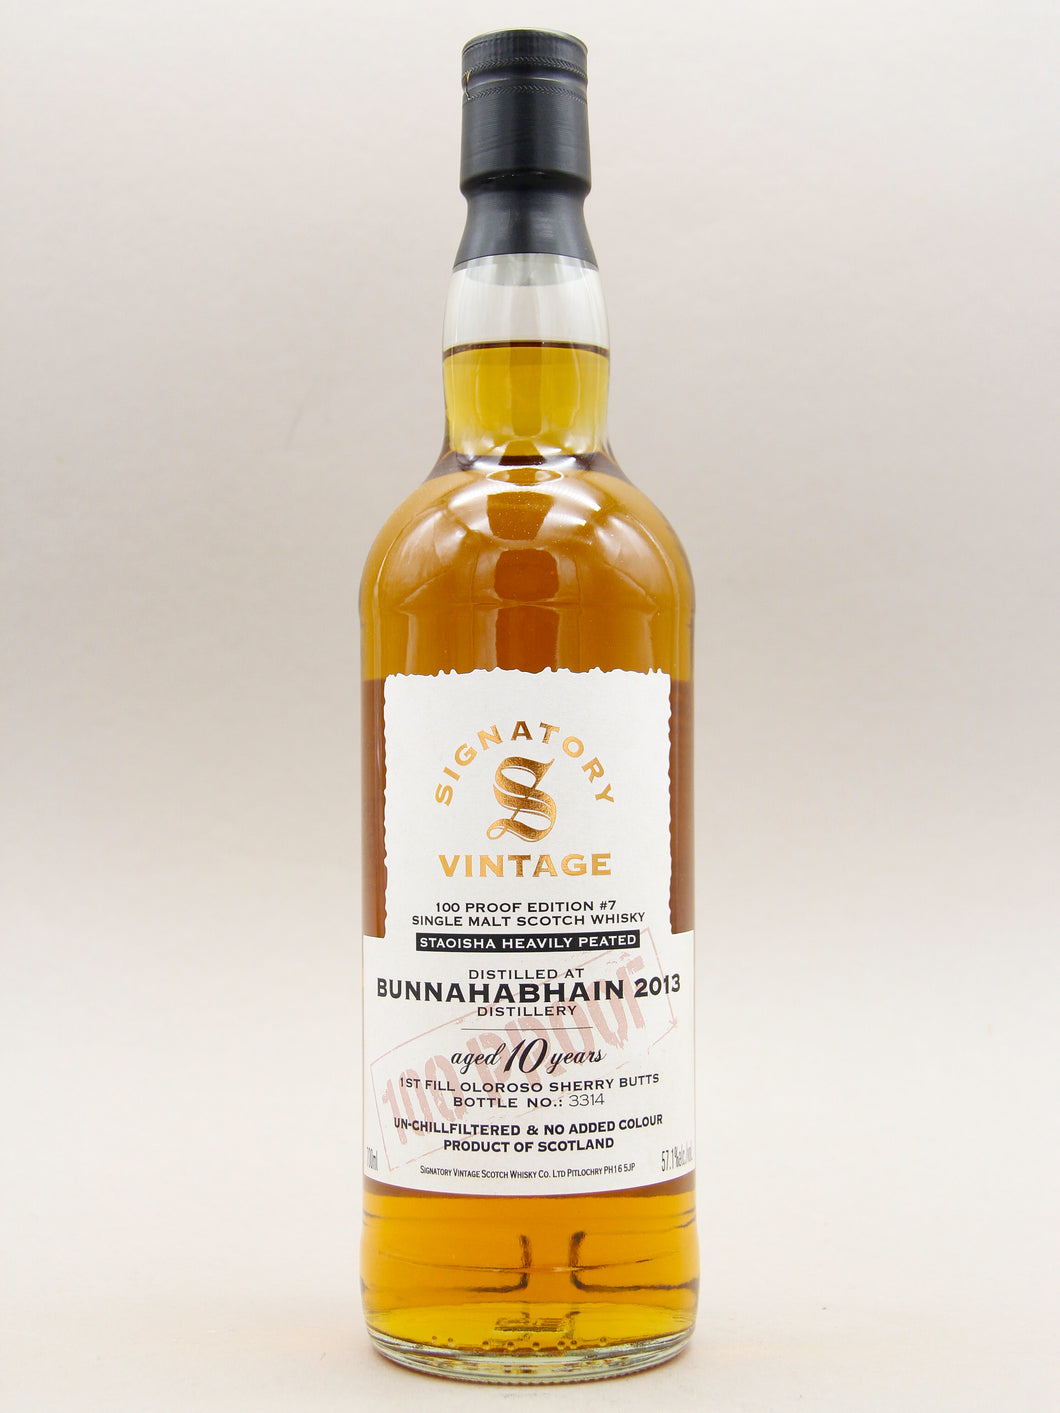 Signatory Vintage, Bunnahabhain 2013-2023, Staoisha Heavily Peated, Aged 10 years, Single Malt Scotch Whisky (57.1%, 70cl)